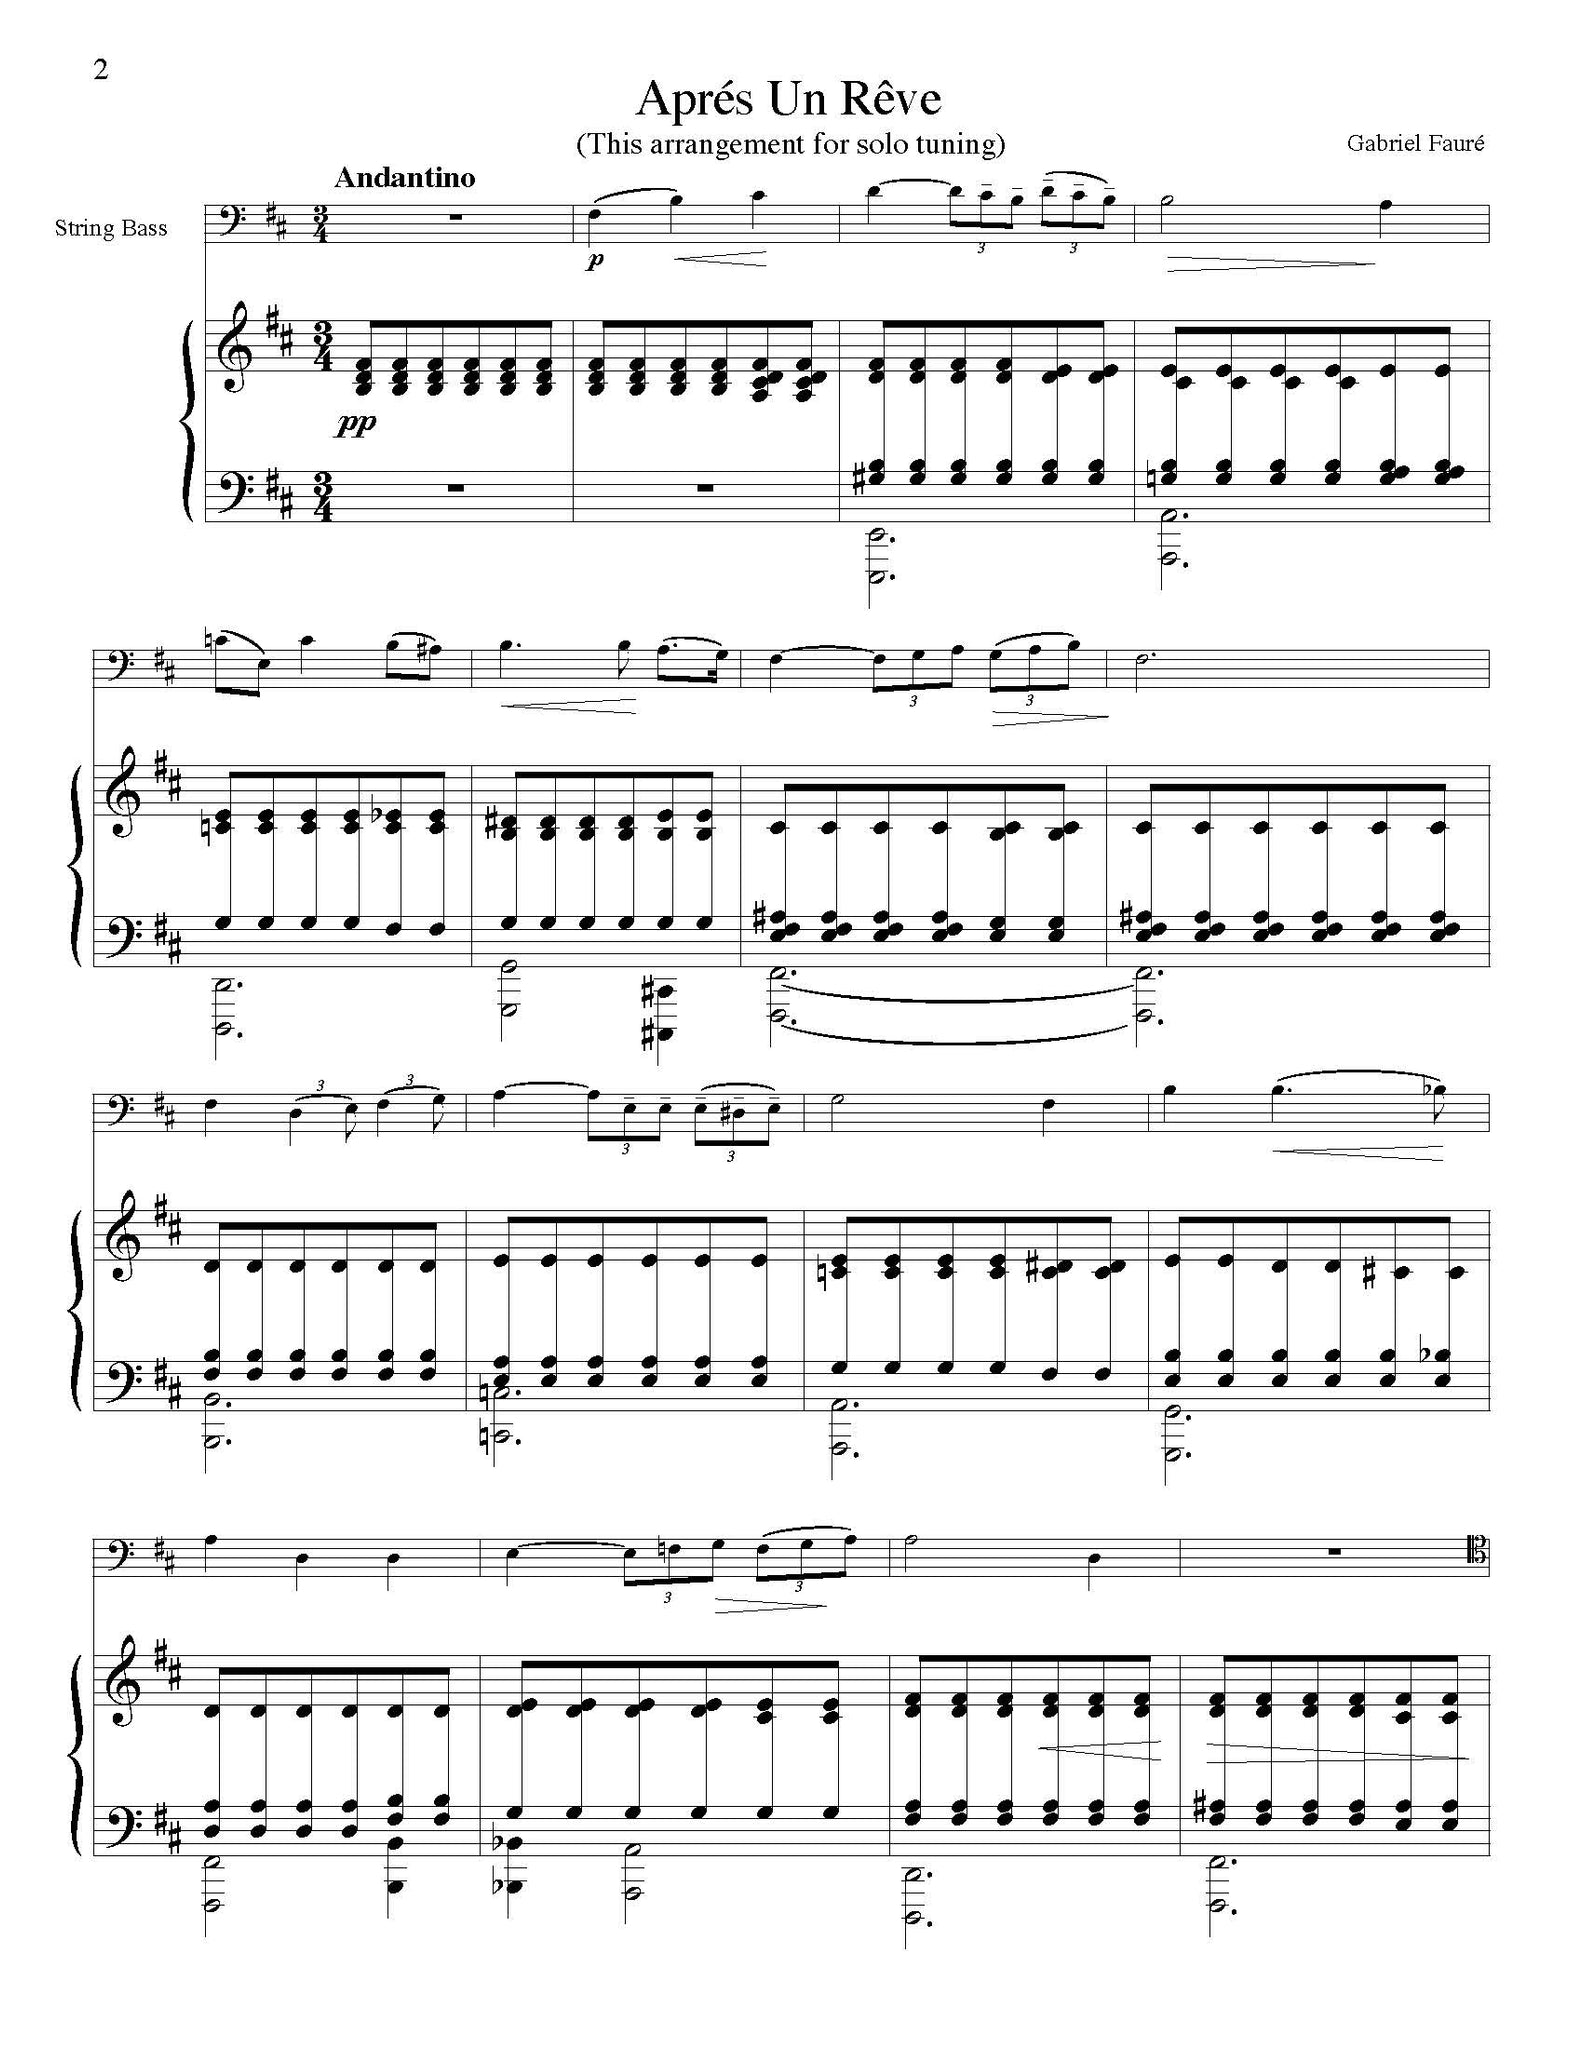 Faure Apres un Reve b minor solo tuning page 1